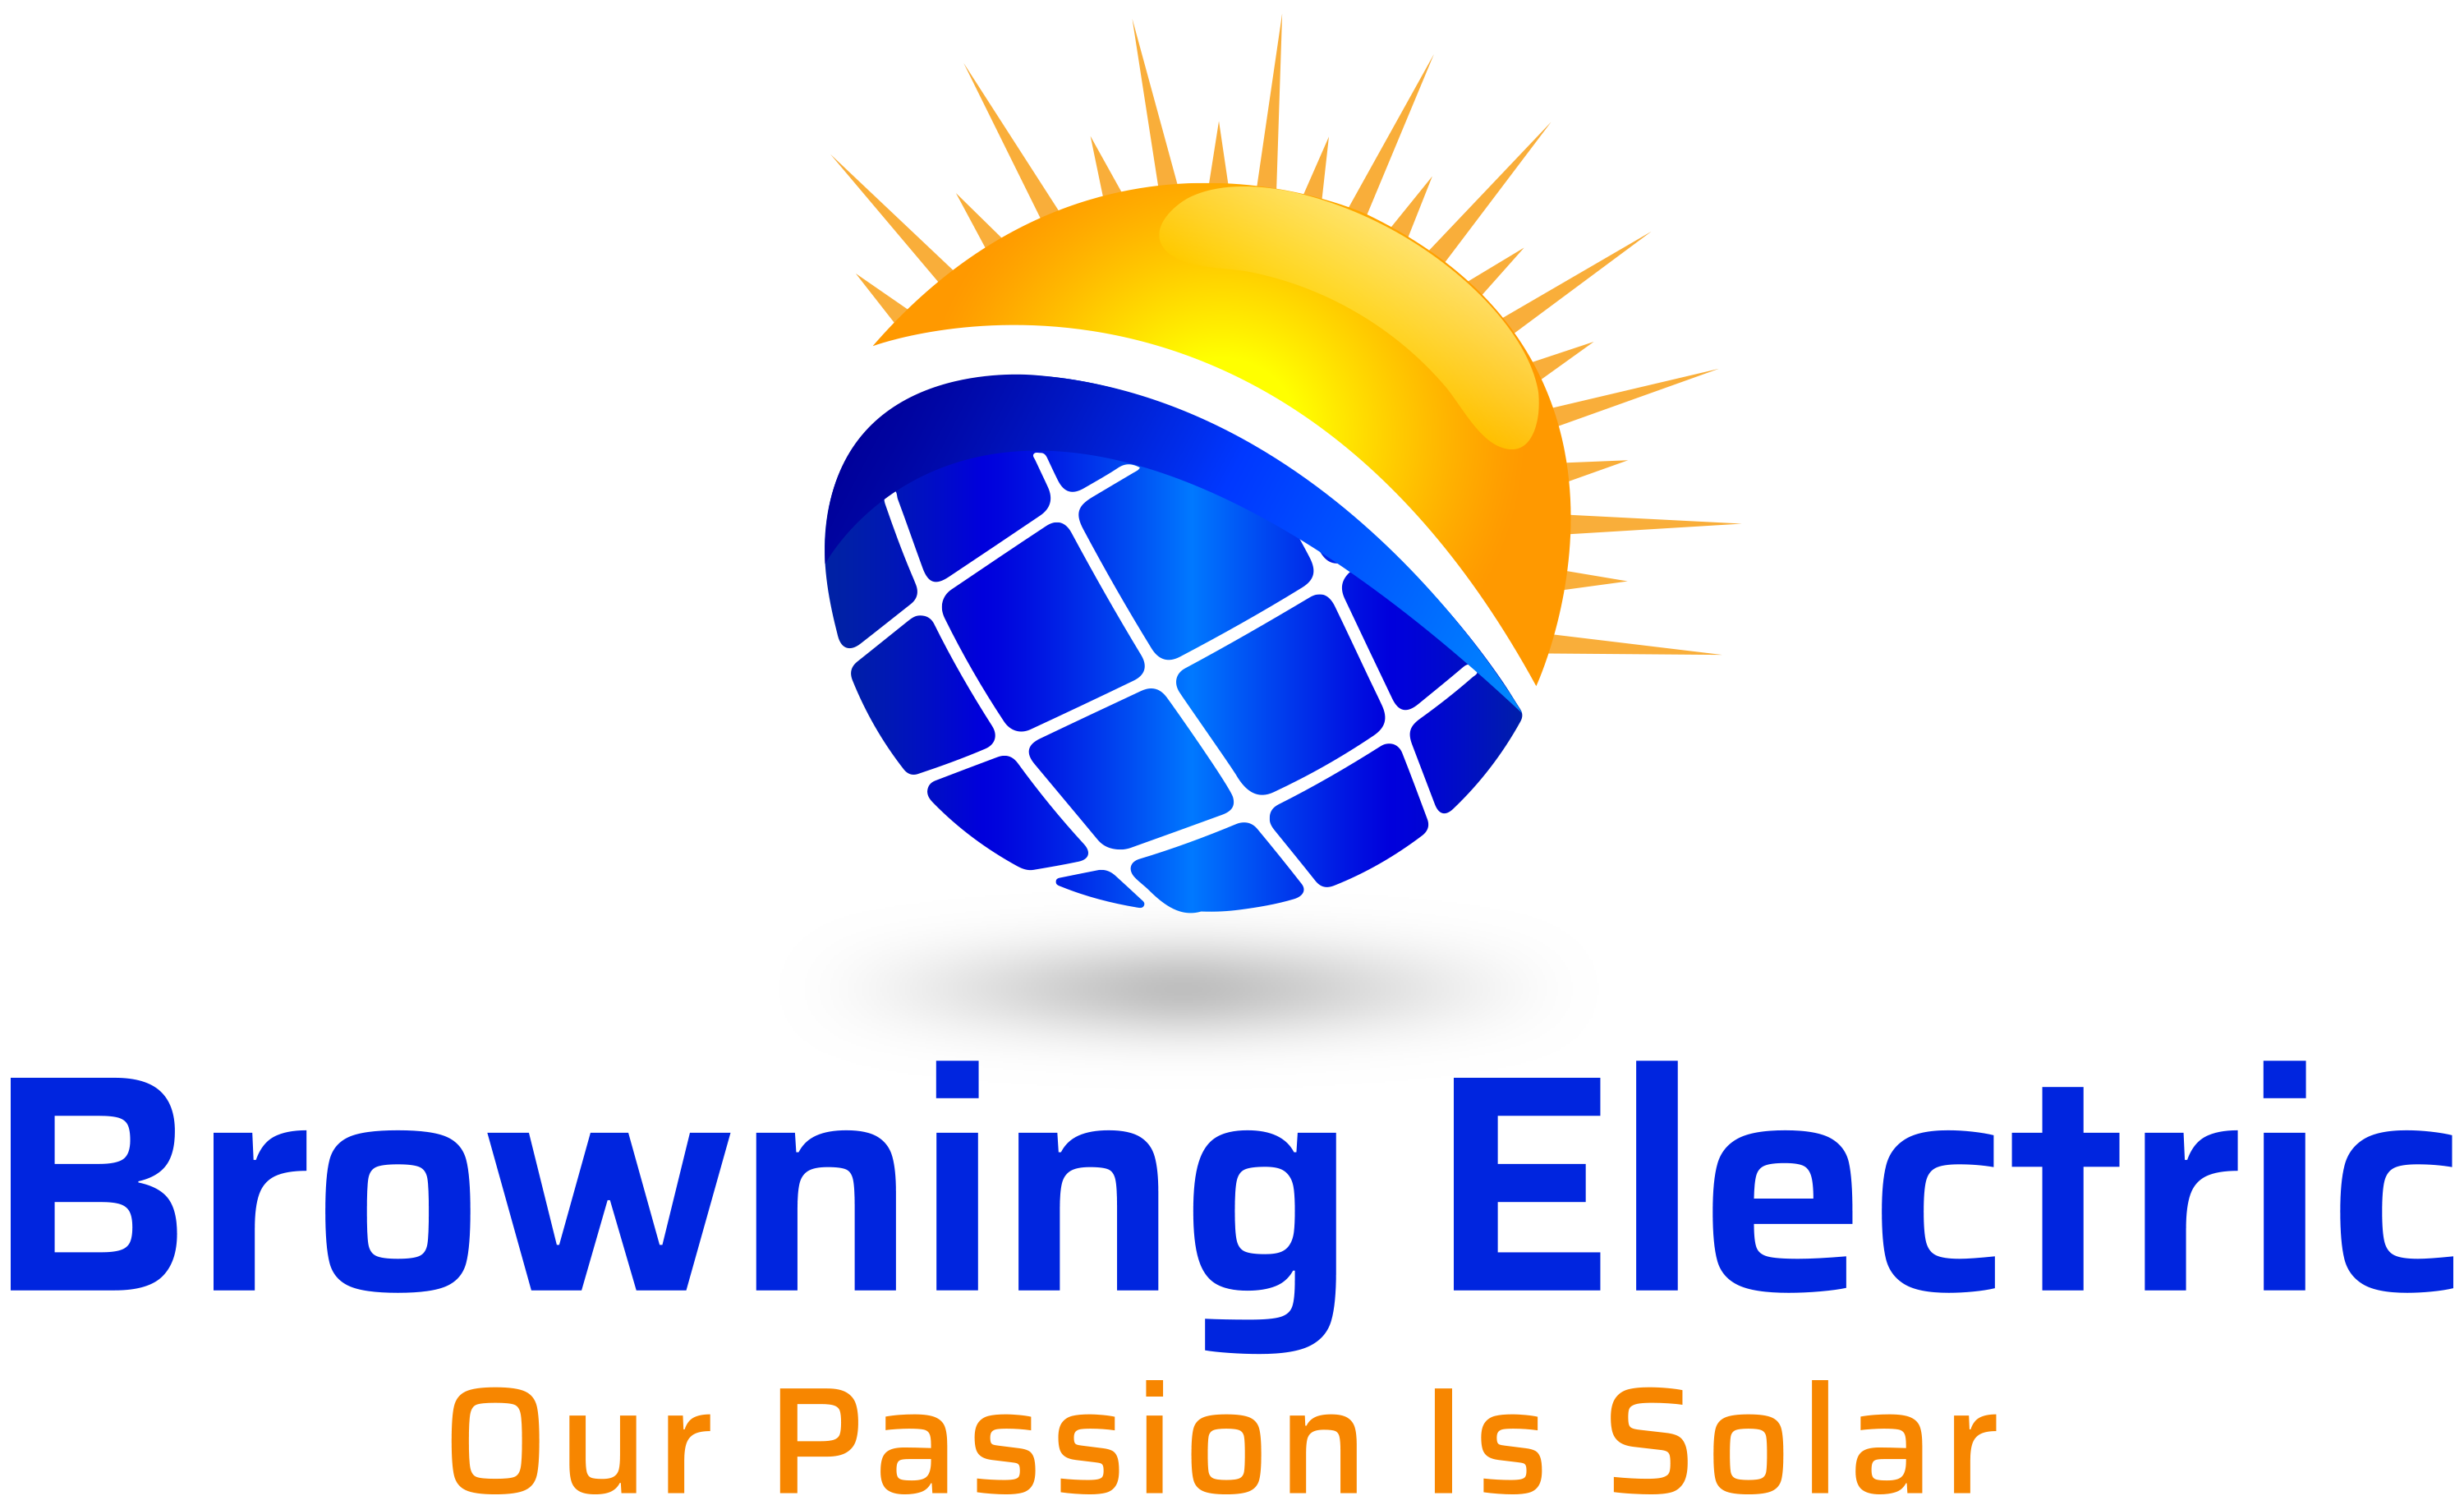 Browning Electric logo